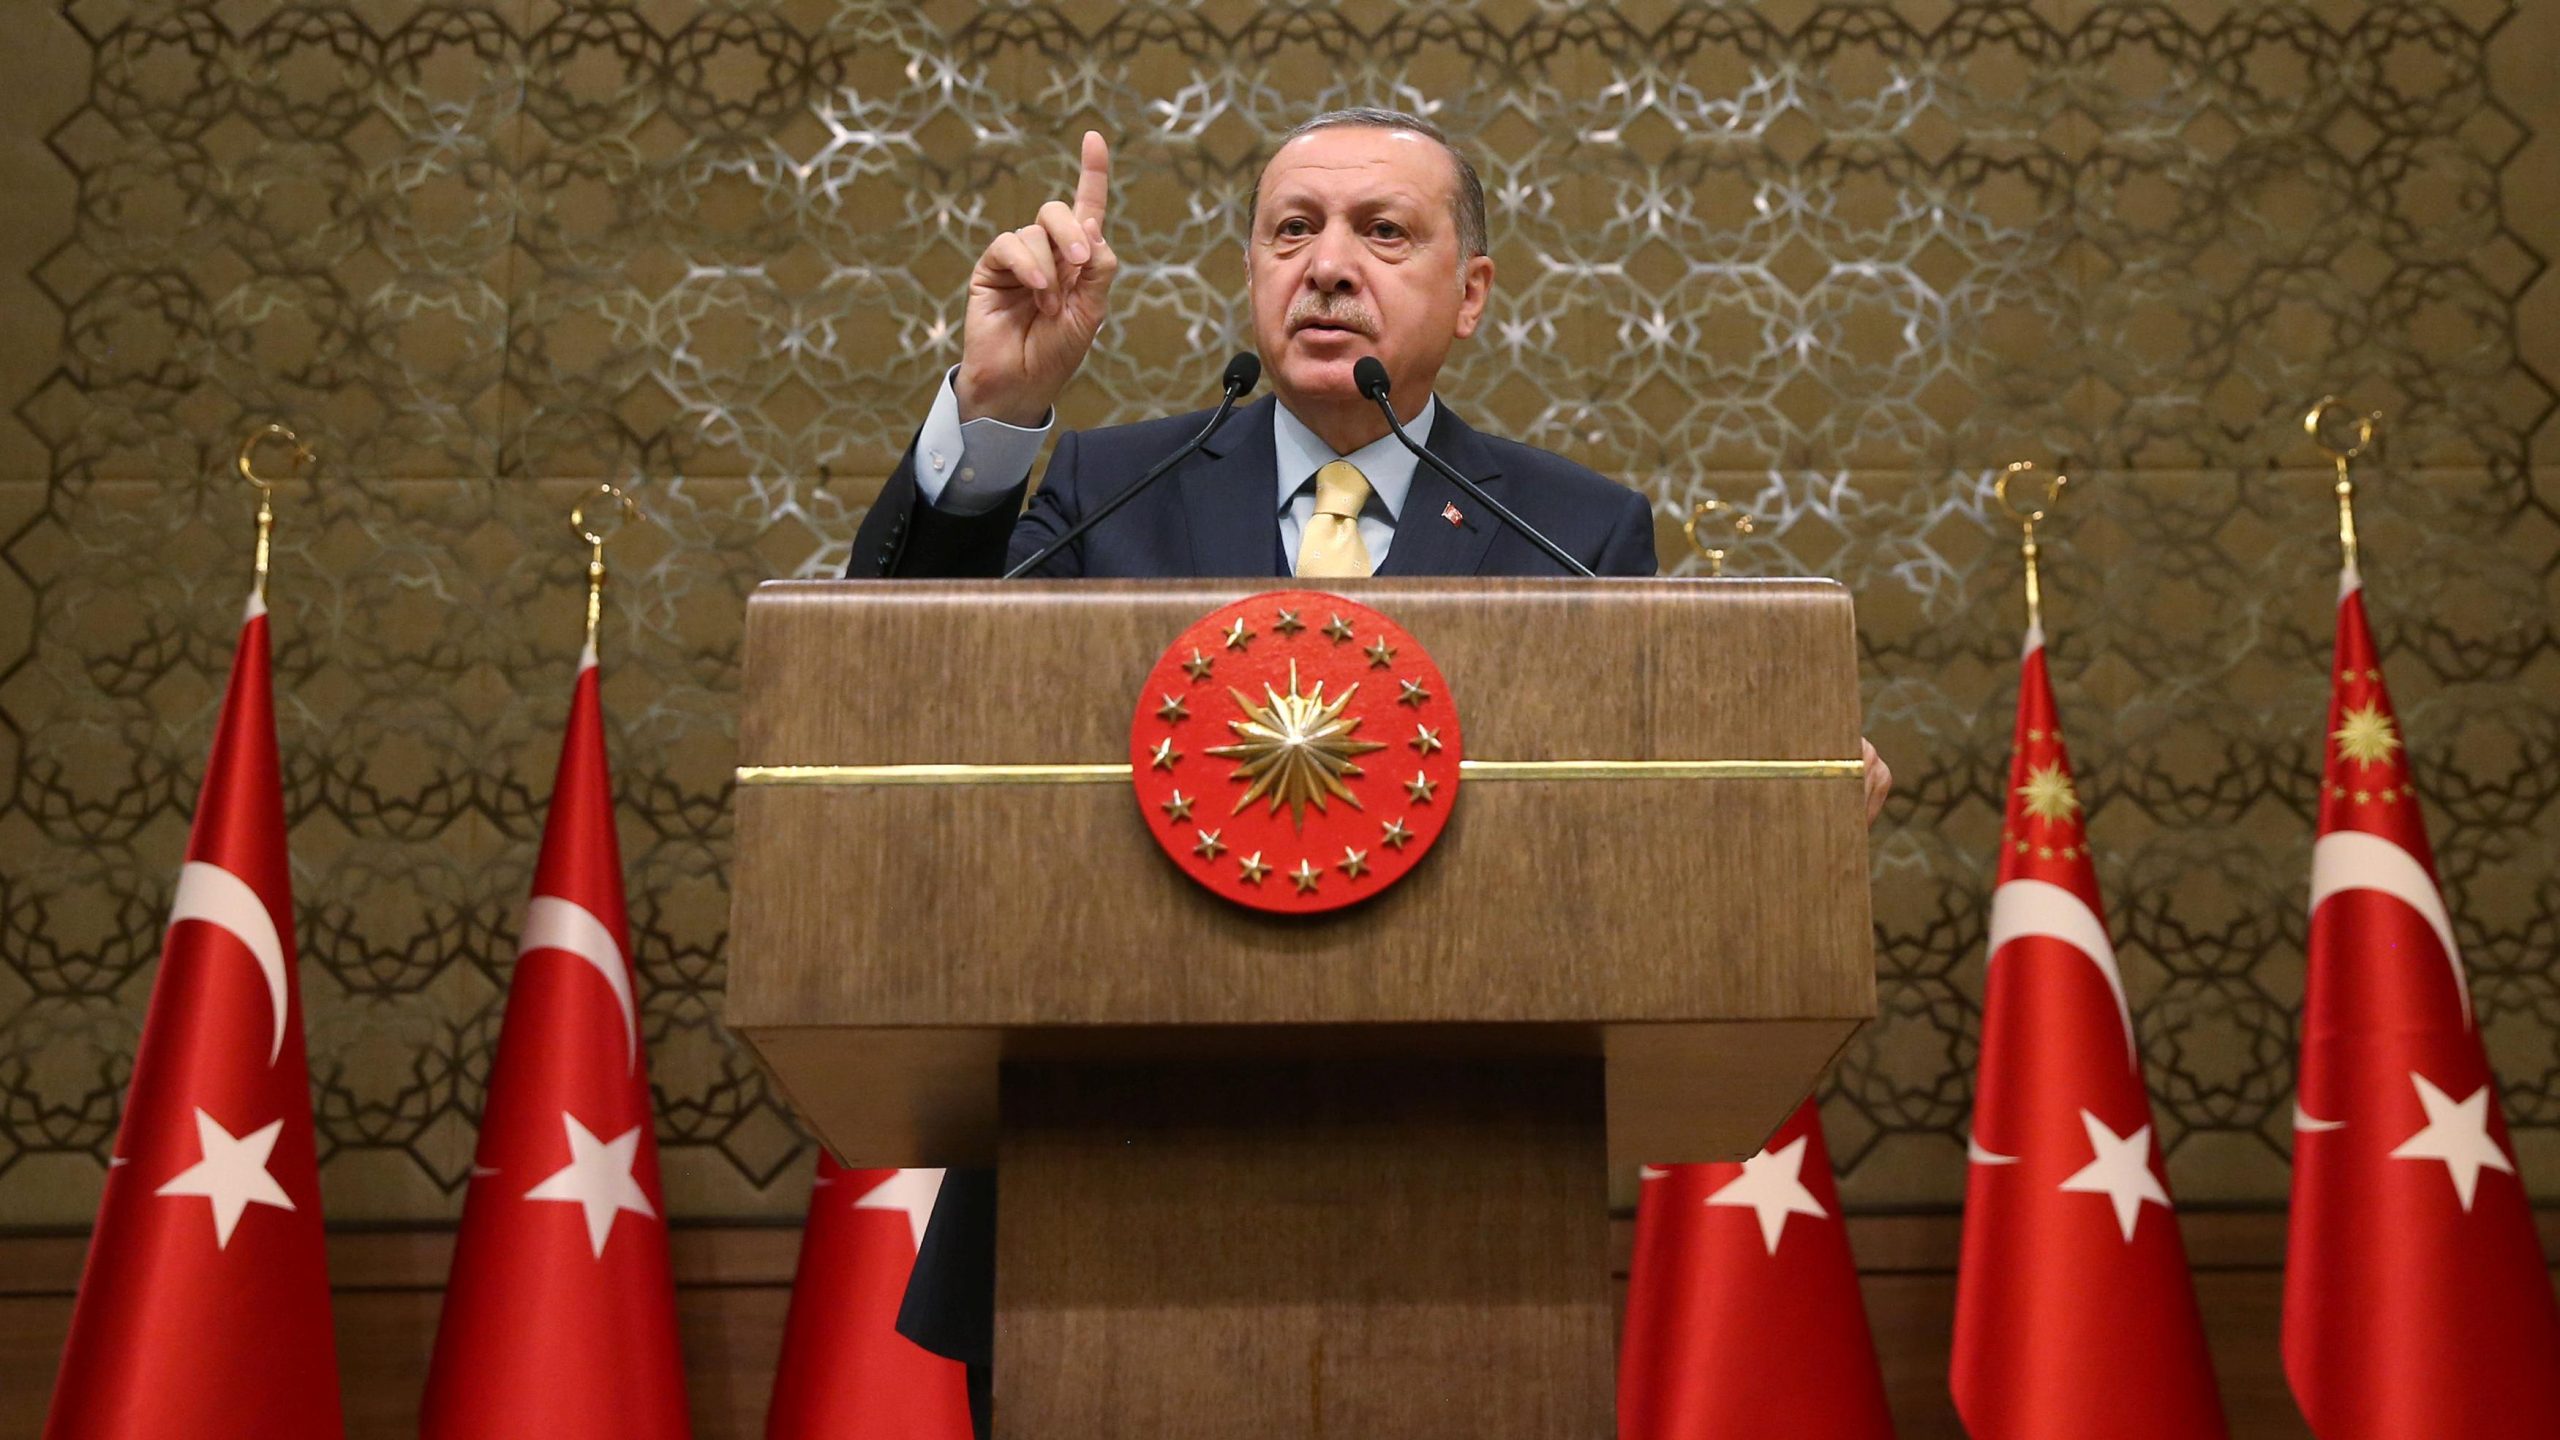 Ο Ρ.Τ. Ερντογάν απειλεί ανοικτά: «Θα πάρουμε ζωές για να κάνουμε την Τουρκία ξανά μεγάλη- Δεν μπλοφάρουμε»!